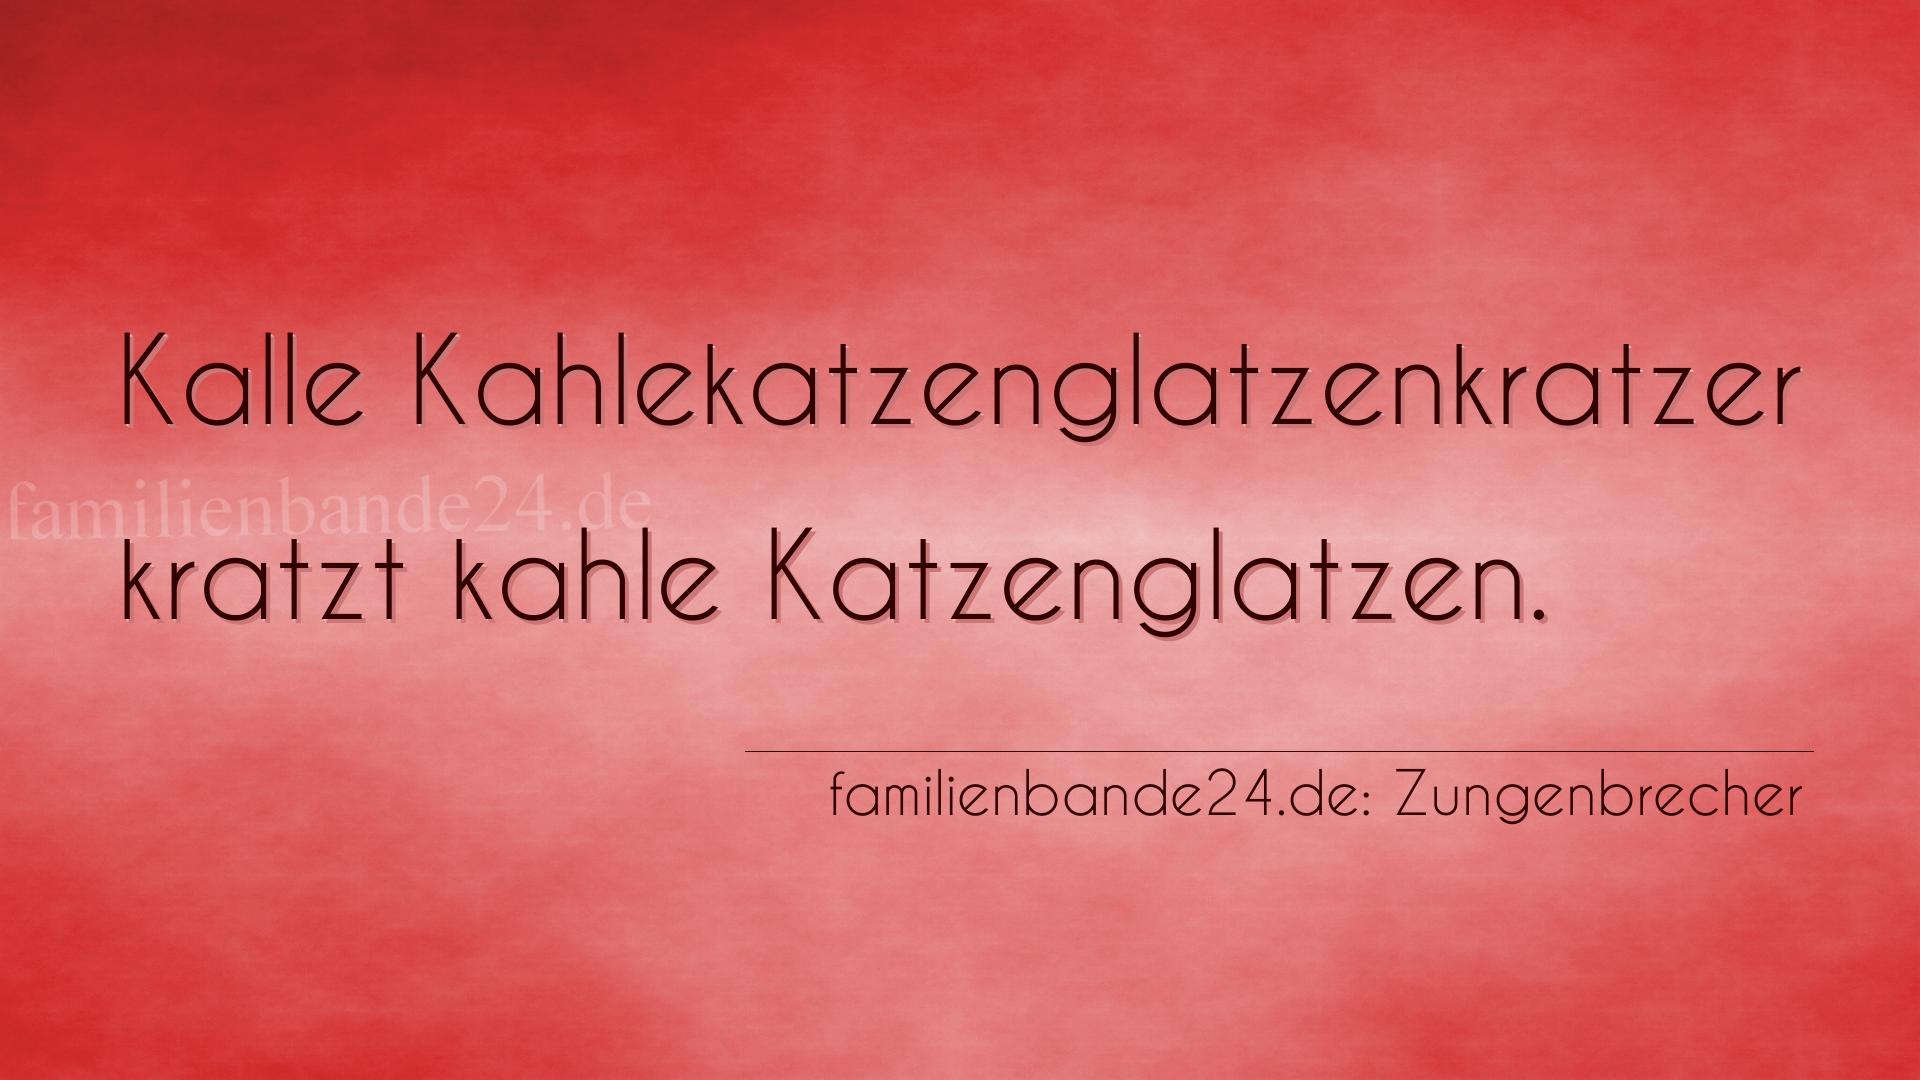 Zungenbrecher Nummer 697: Kalle Kahlekatzenglatzenkratzer kratzt kahle Katzenglatzen.